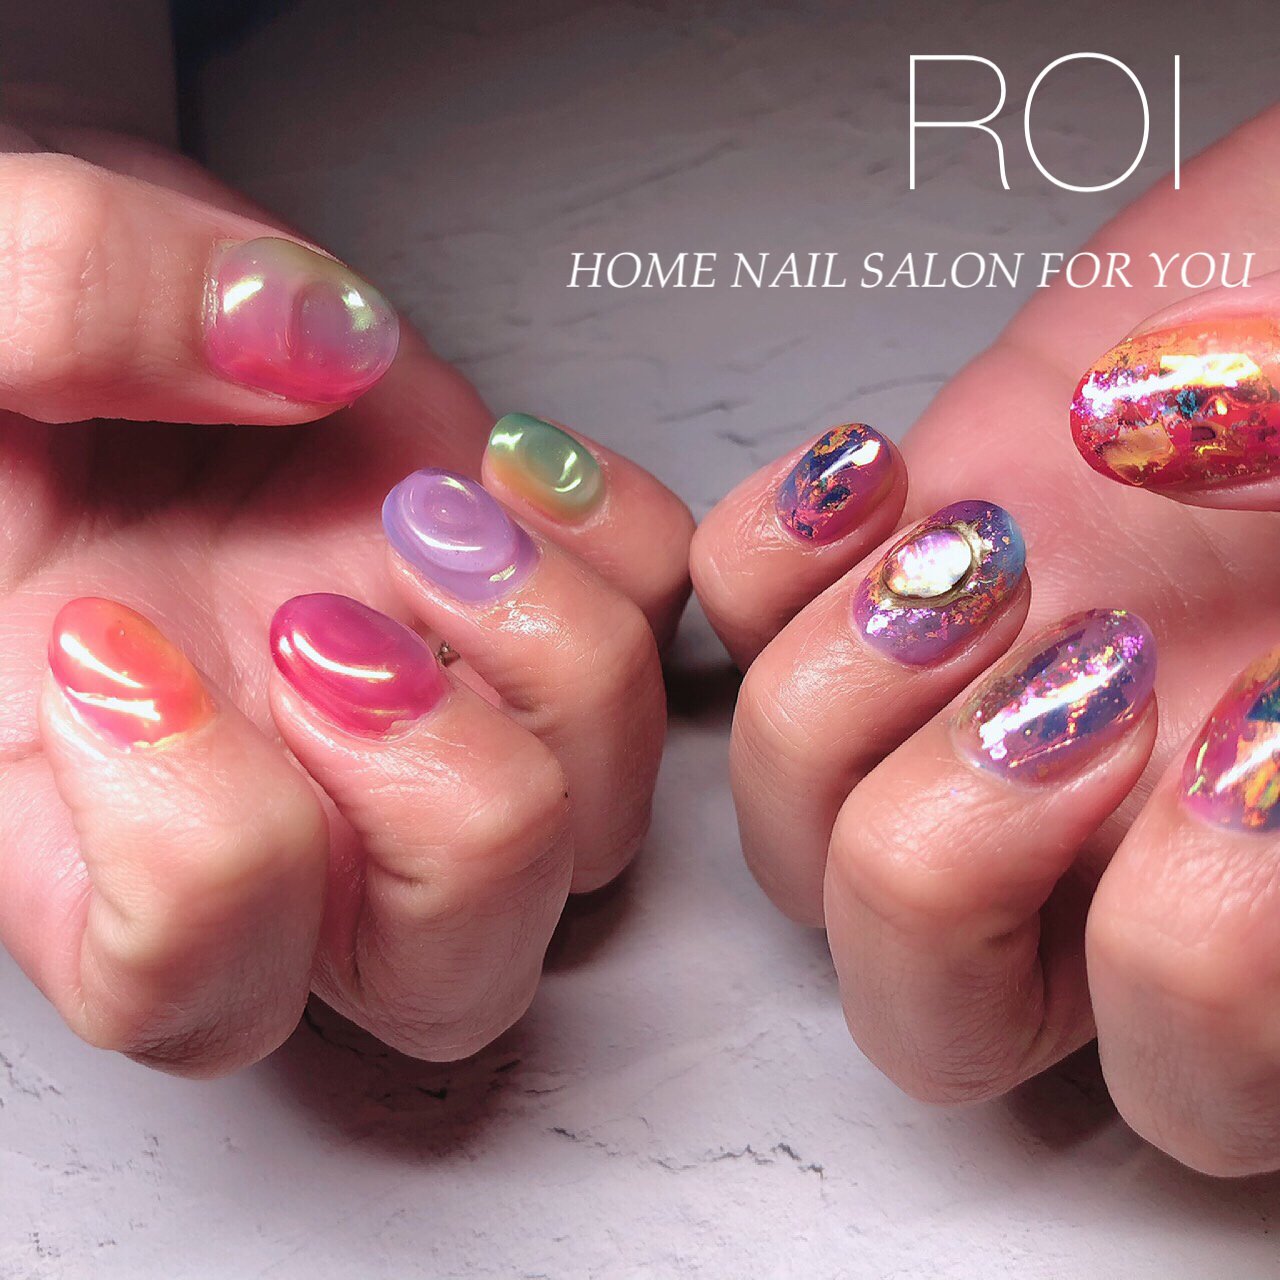 夏 旅行 海 リゾート ハンド Roi Home Nail Salon For You のネイルデザイン No ネイルブック